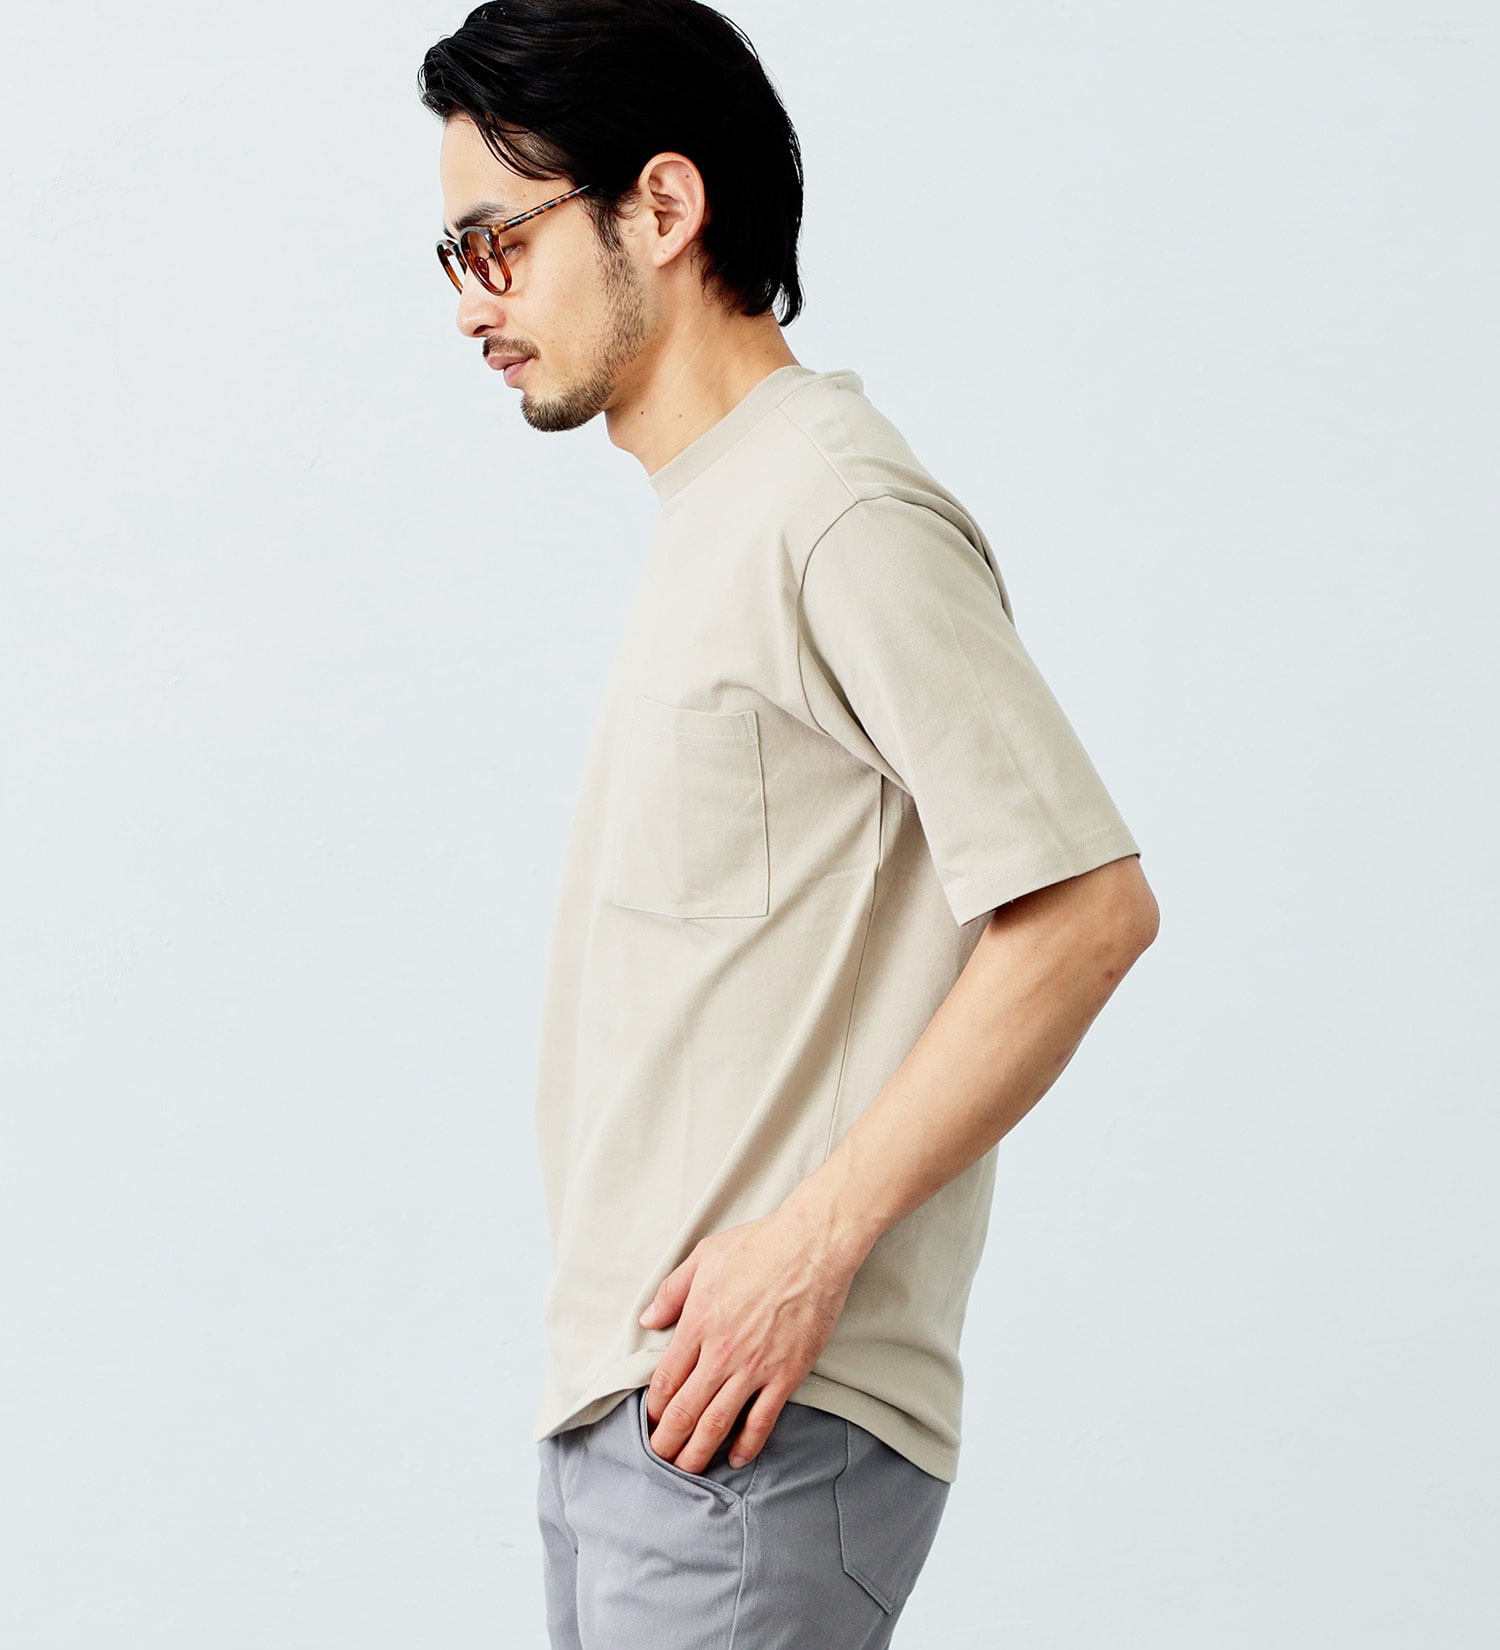 EDWIN(エドウイン)のデニスラAIR クルーネックポケットTシャツ 半袖|トップス/Tシャツ/カットソー/メンズ|グレイッシュベージュ